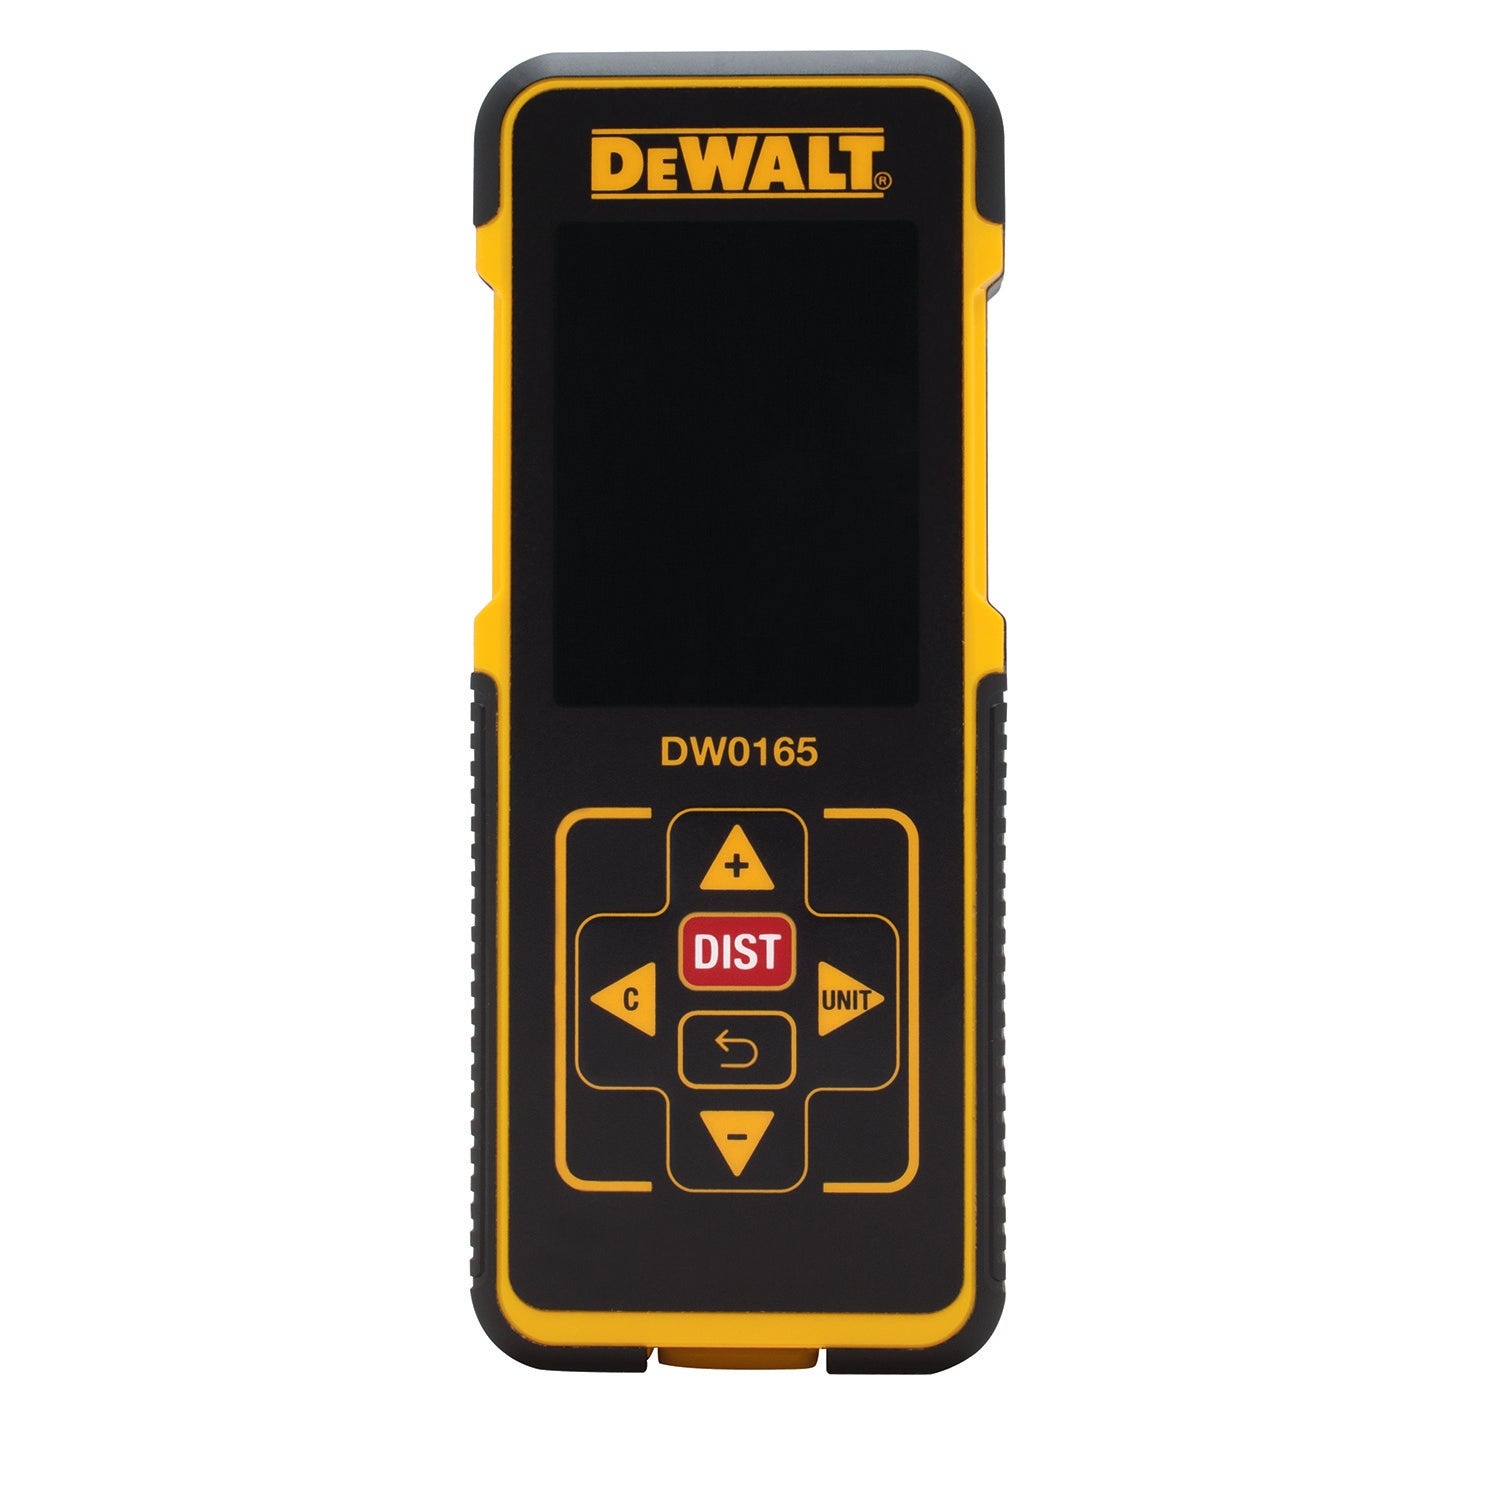 DeWalt DW0165 Tool Connect 165' Laser Distance Measurer